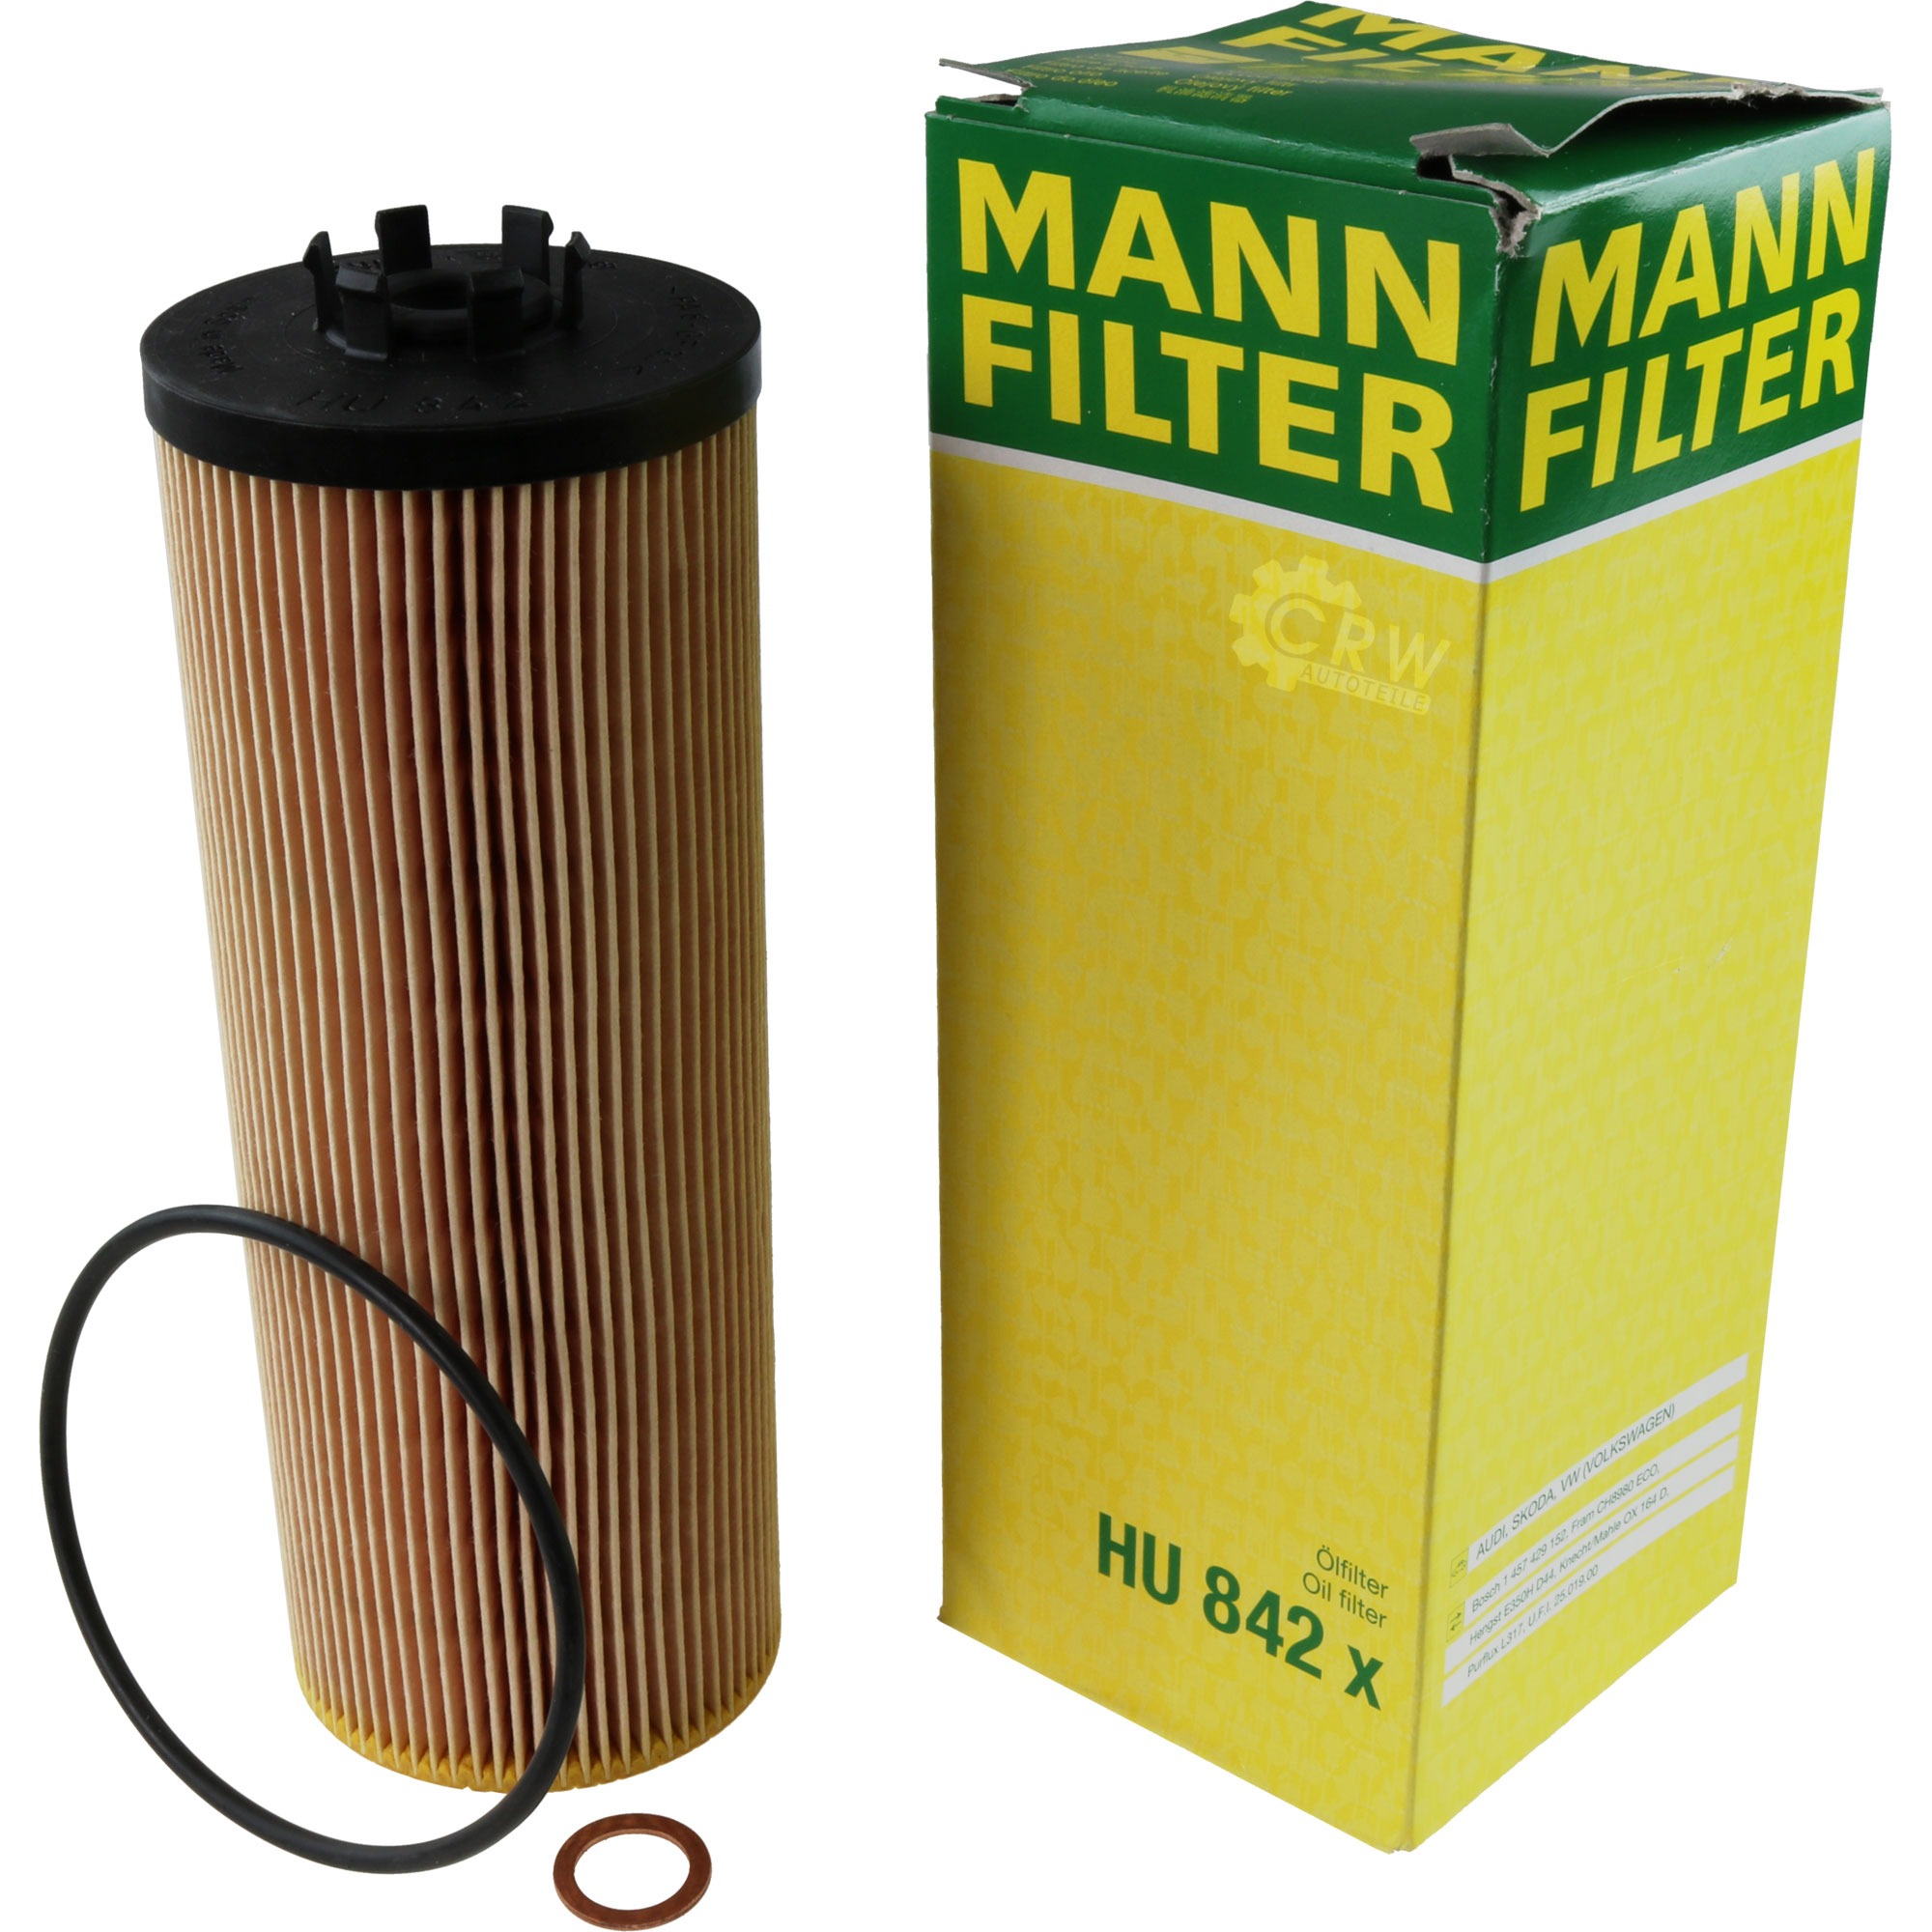 MANN-FILTER Ölfilter HU 842 x Oil Filter